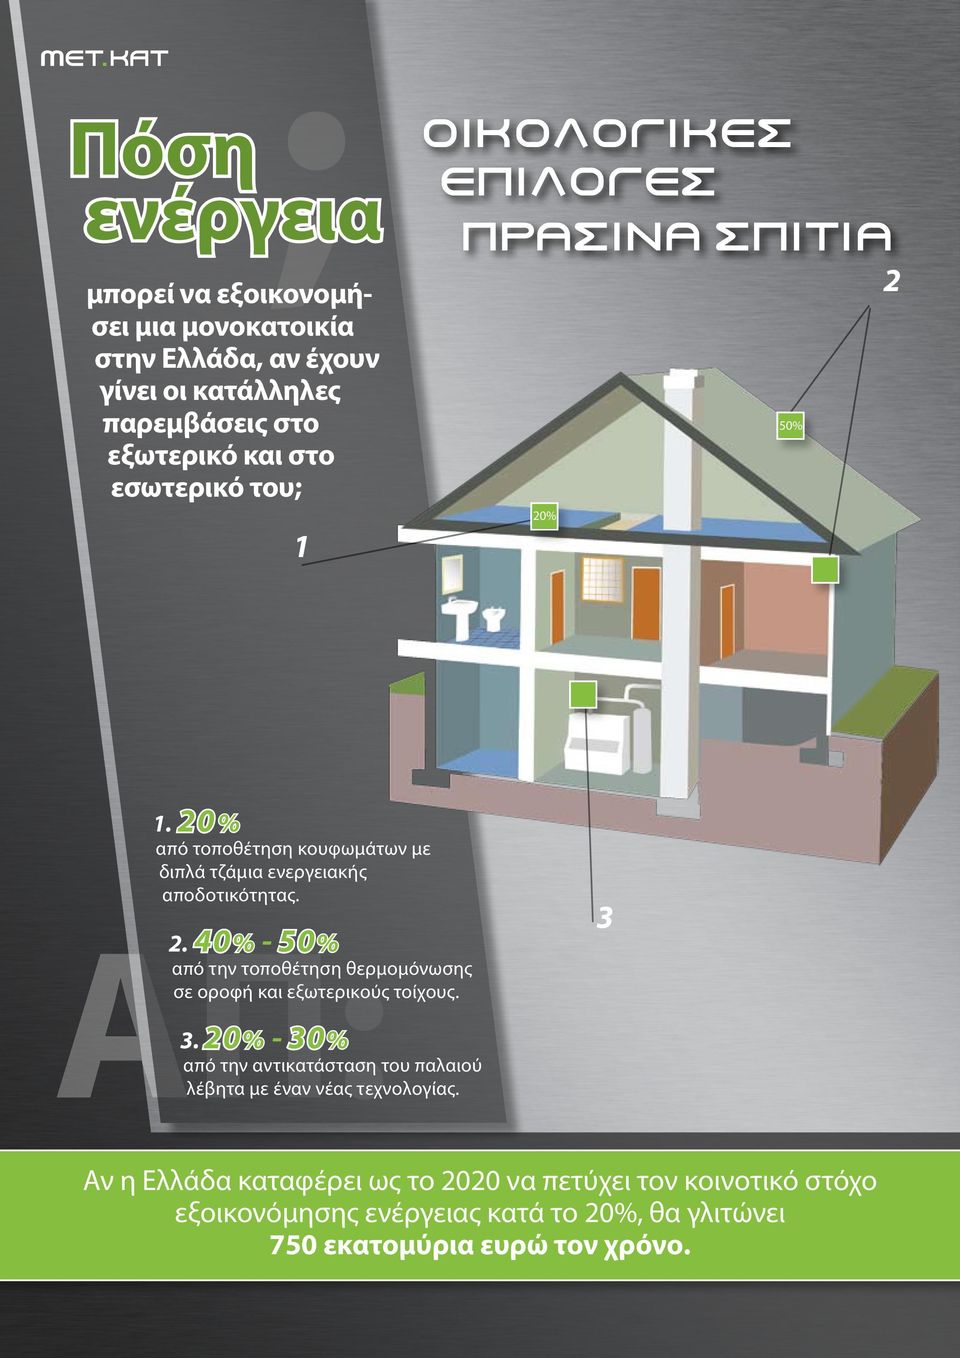 40% - 50% από την τοποθέτηση θερμομόνωσης σε οροφή και εξωτερικούς τοίχους. 3.